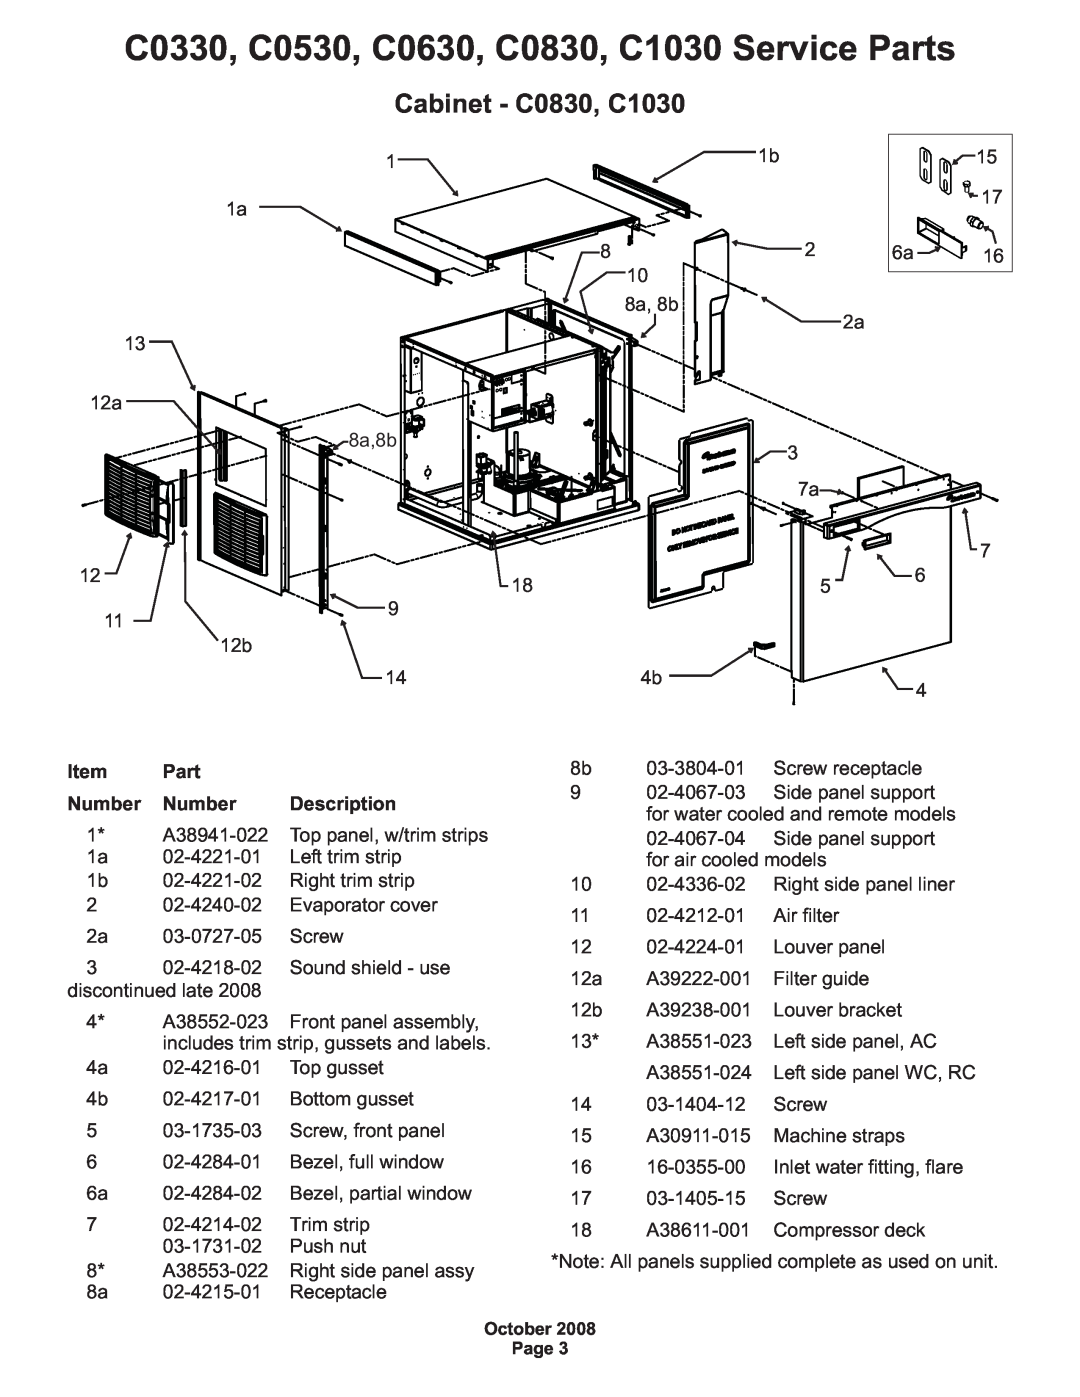 Scotsman Ice manual Cabinet - C0830, C1030, C0330, C0530, C0630, C0830, C1030 Service Parts, Number, Description 